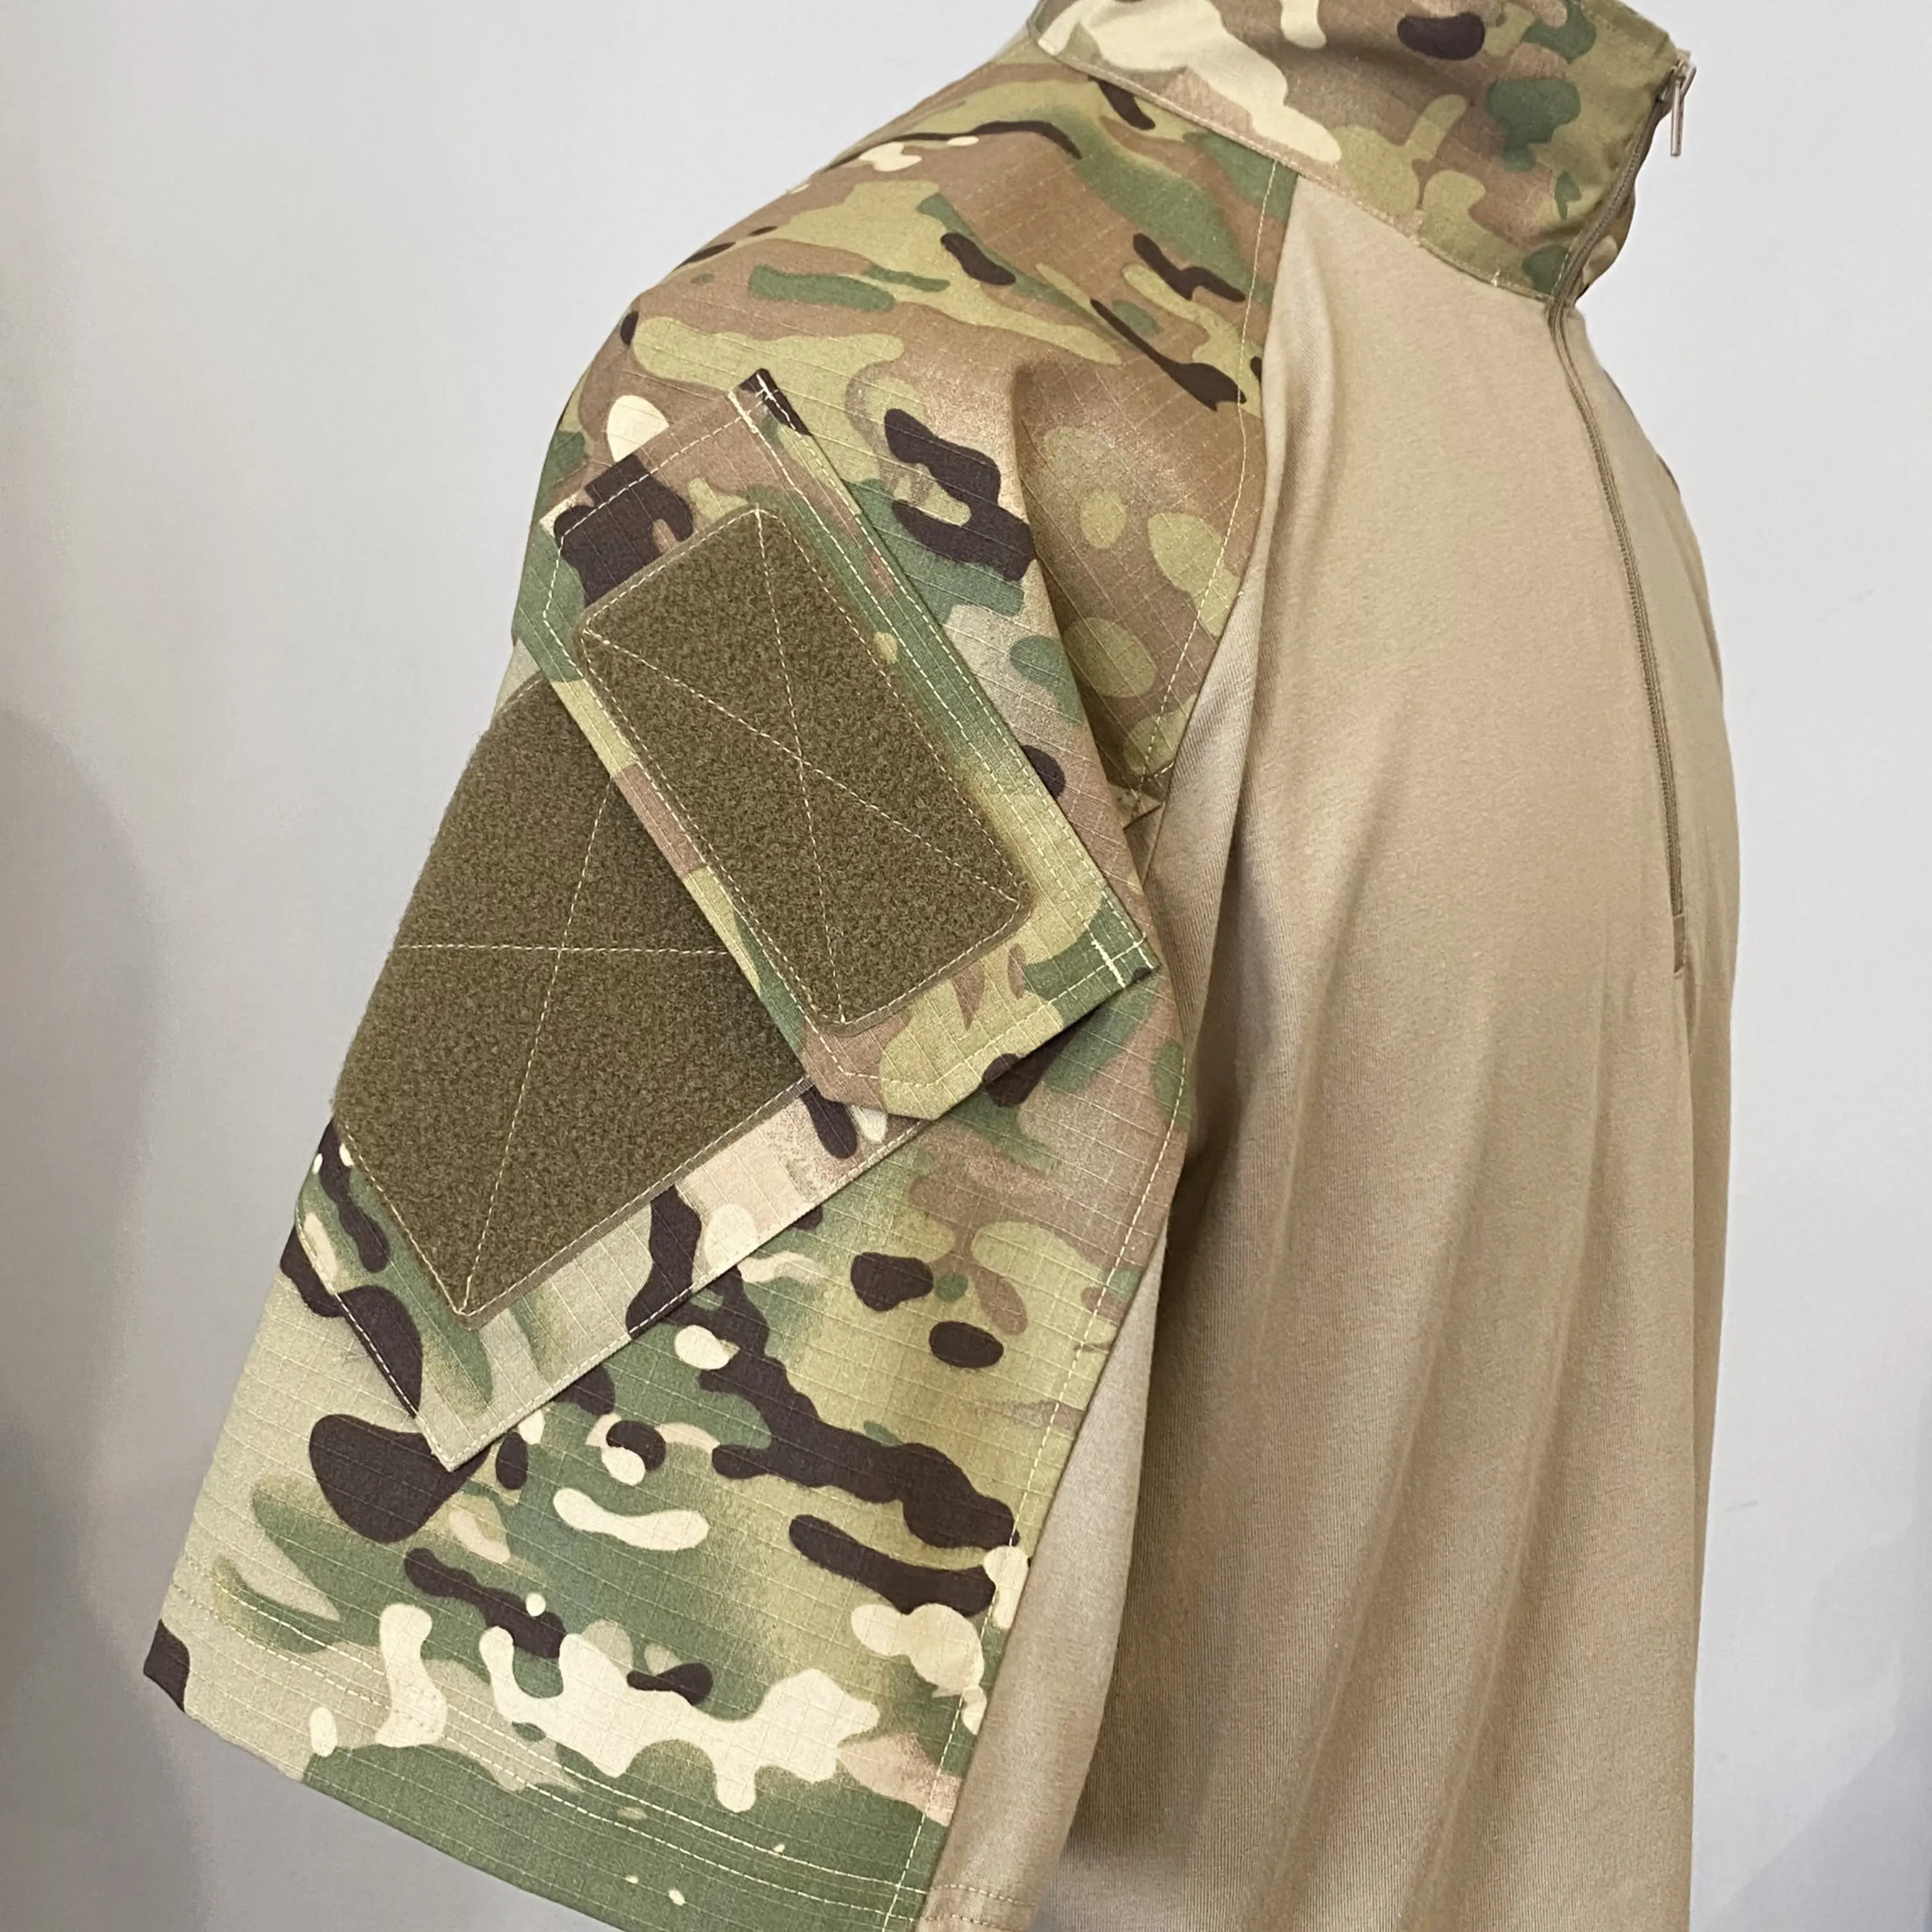 Ropa táctica de camuflaje de alta calidad al por mayor, camisa de manga corta, traje de rana, uniforme de combate